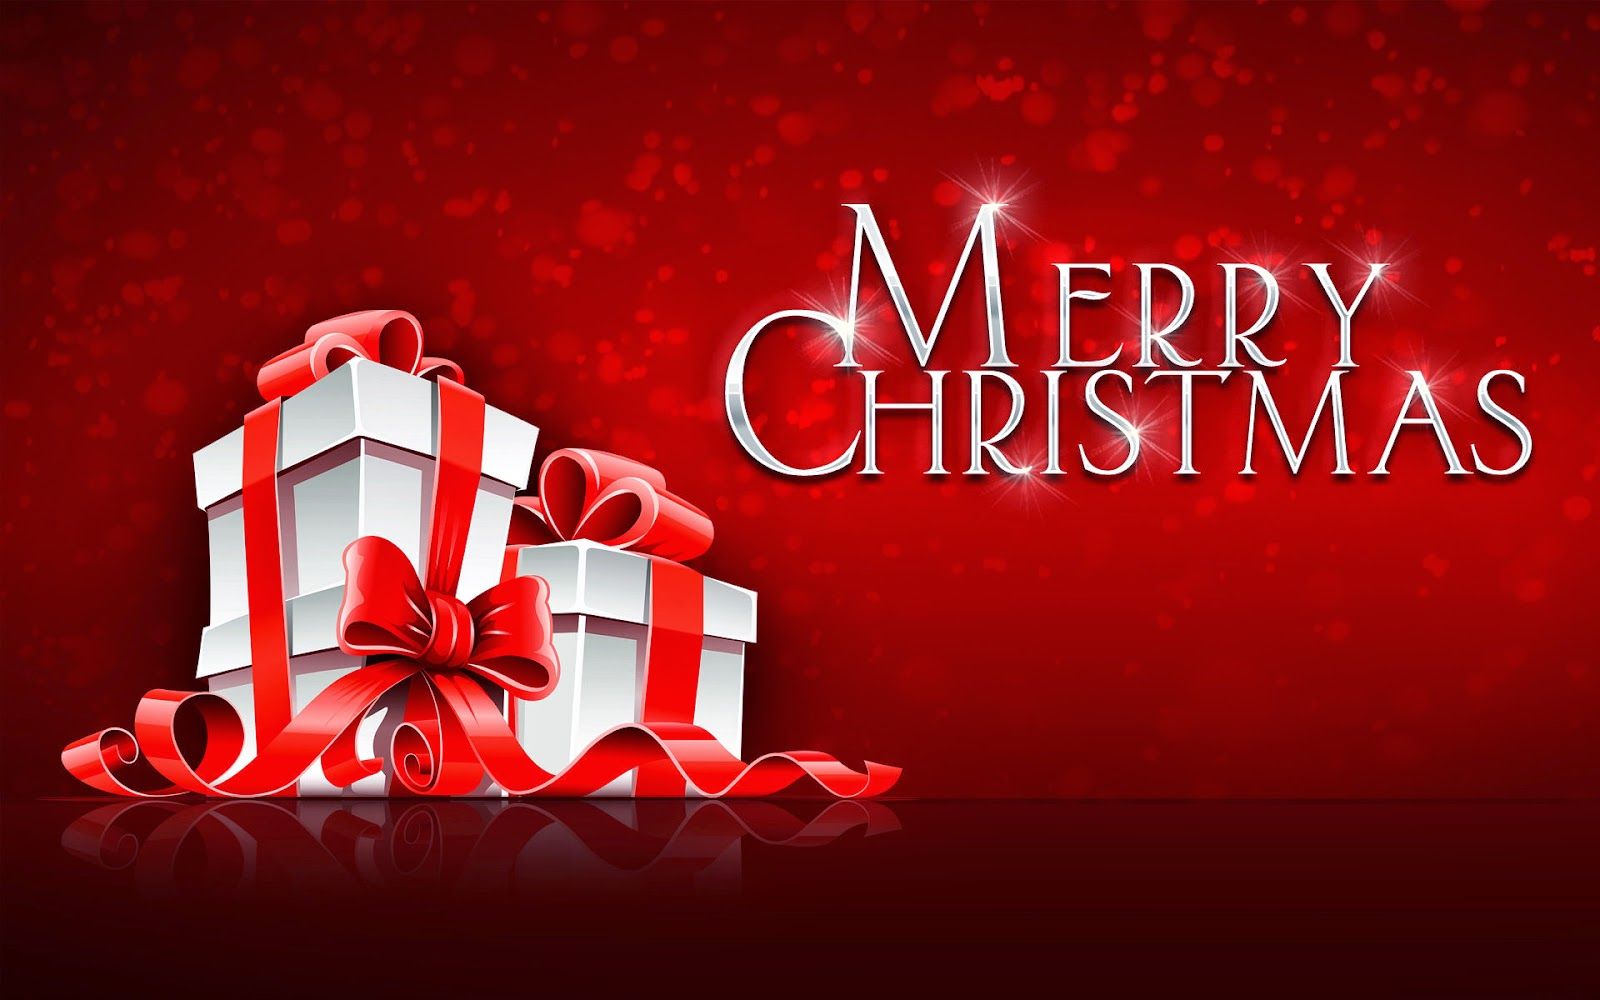 Merry Christmas 2015 Download Free Best Desktop wallpapers - Merry ...